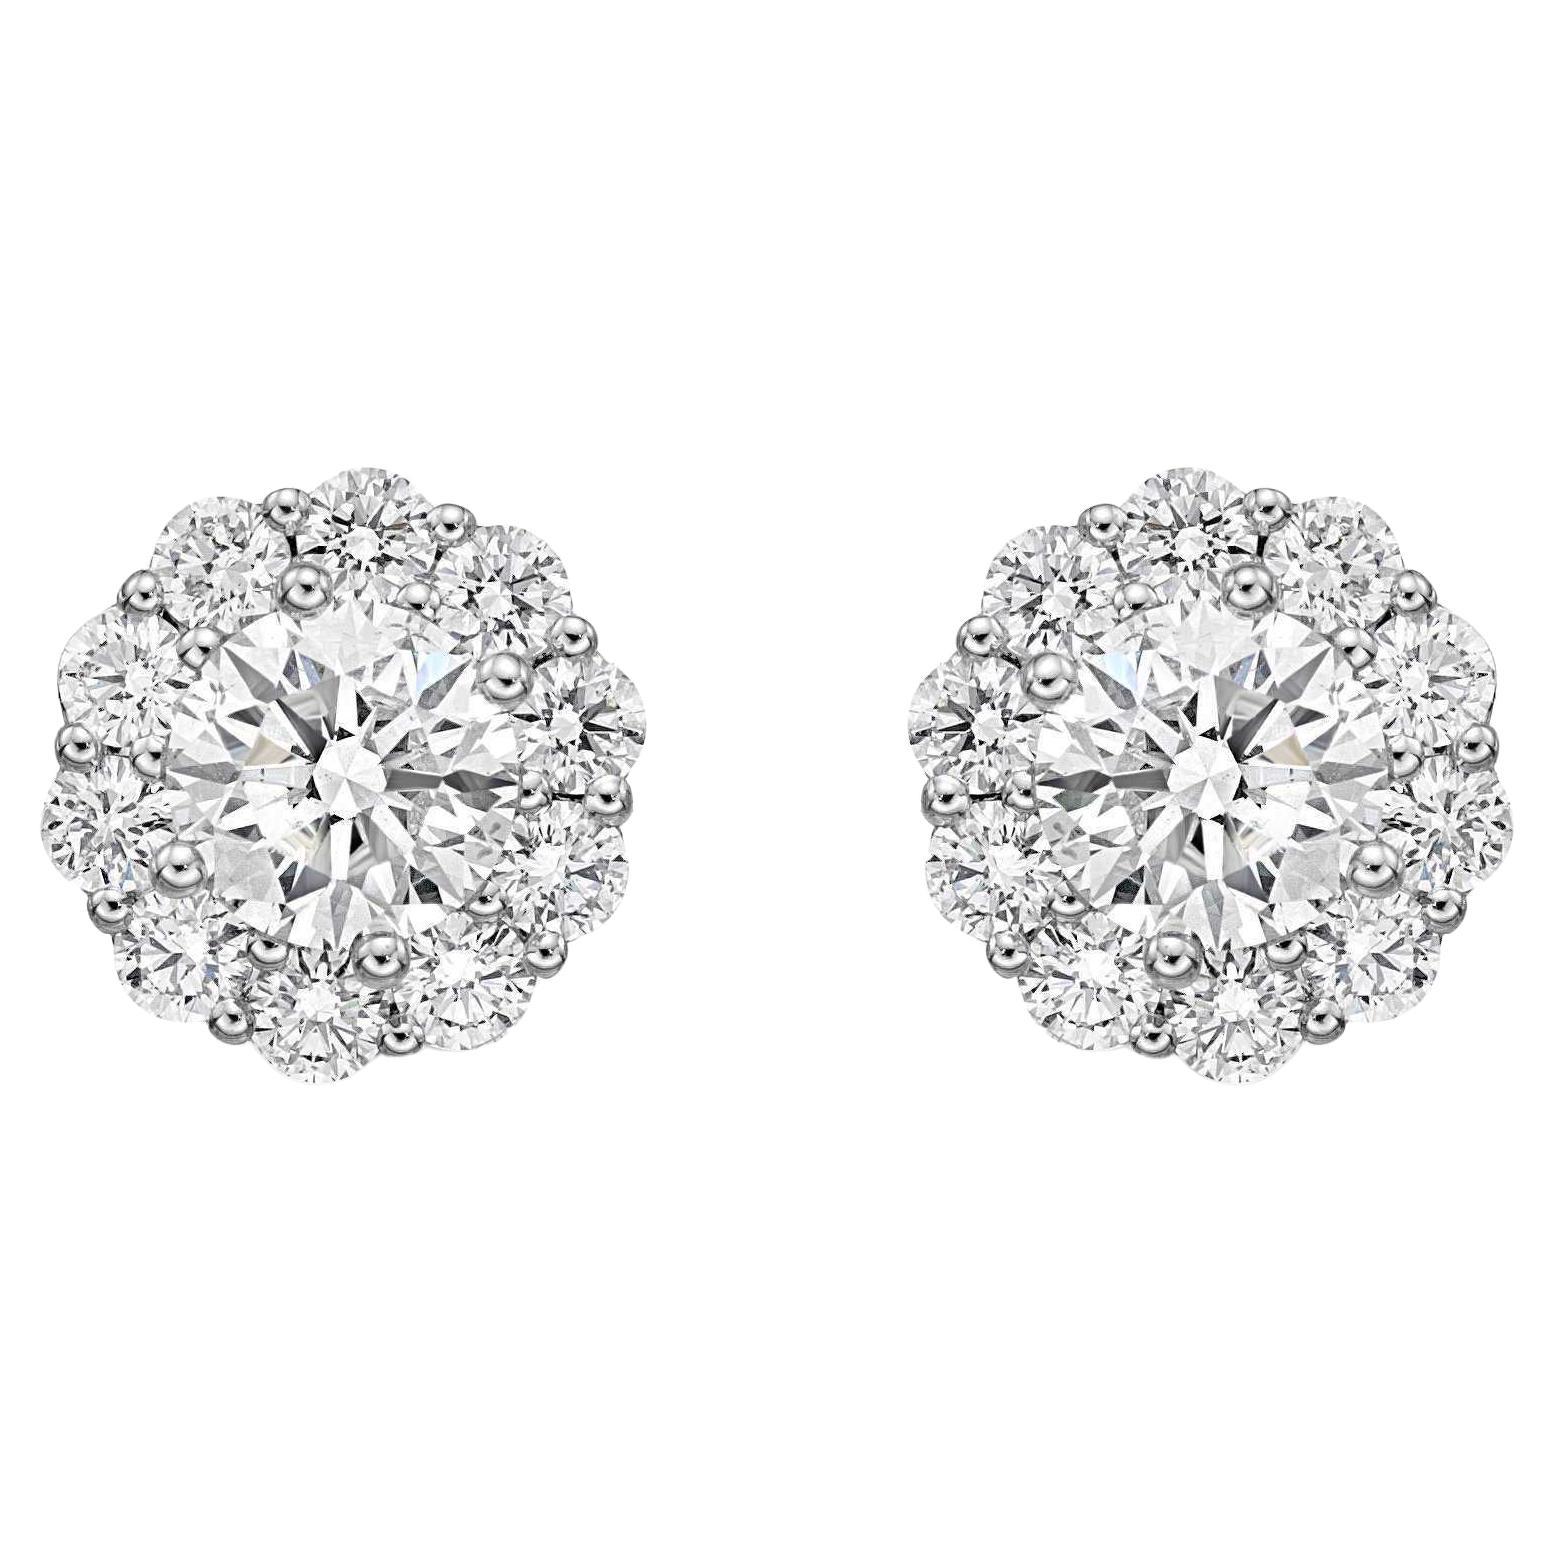 Memoire Blossom Collection Diamond Stud Earrings 0.49ctw 18k White Gold